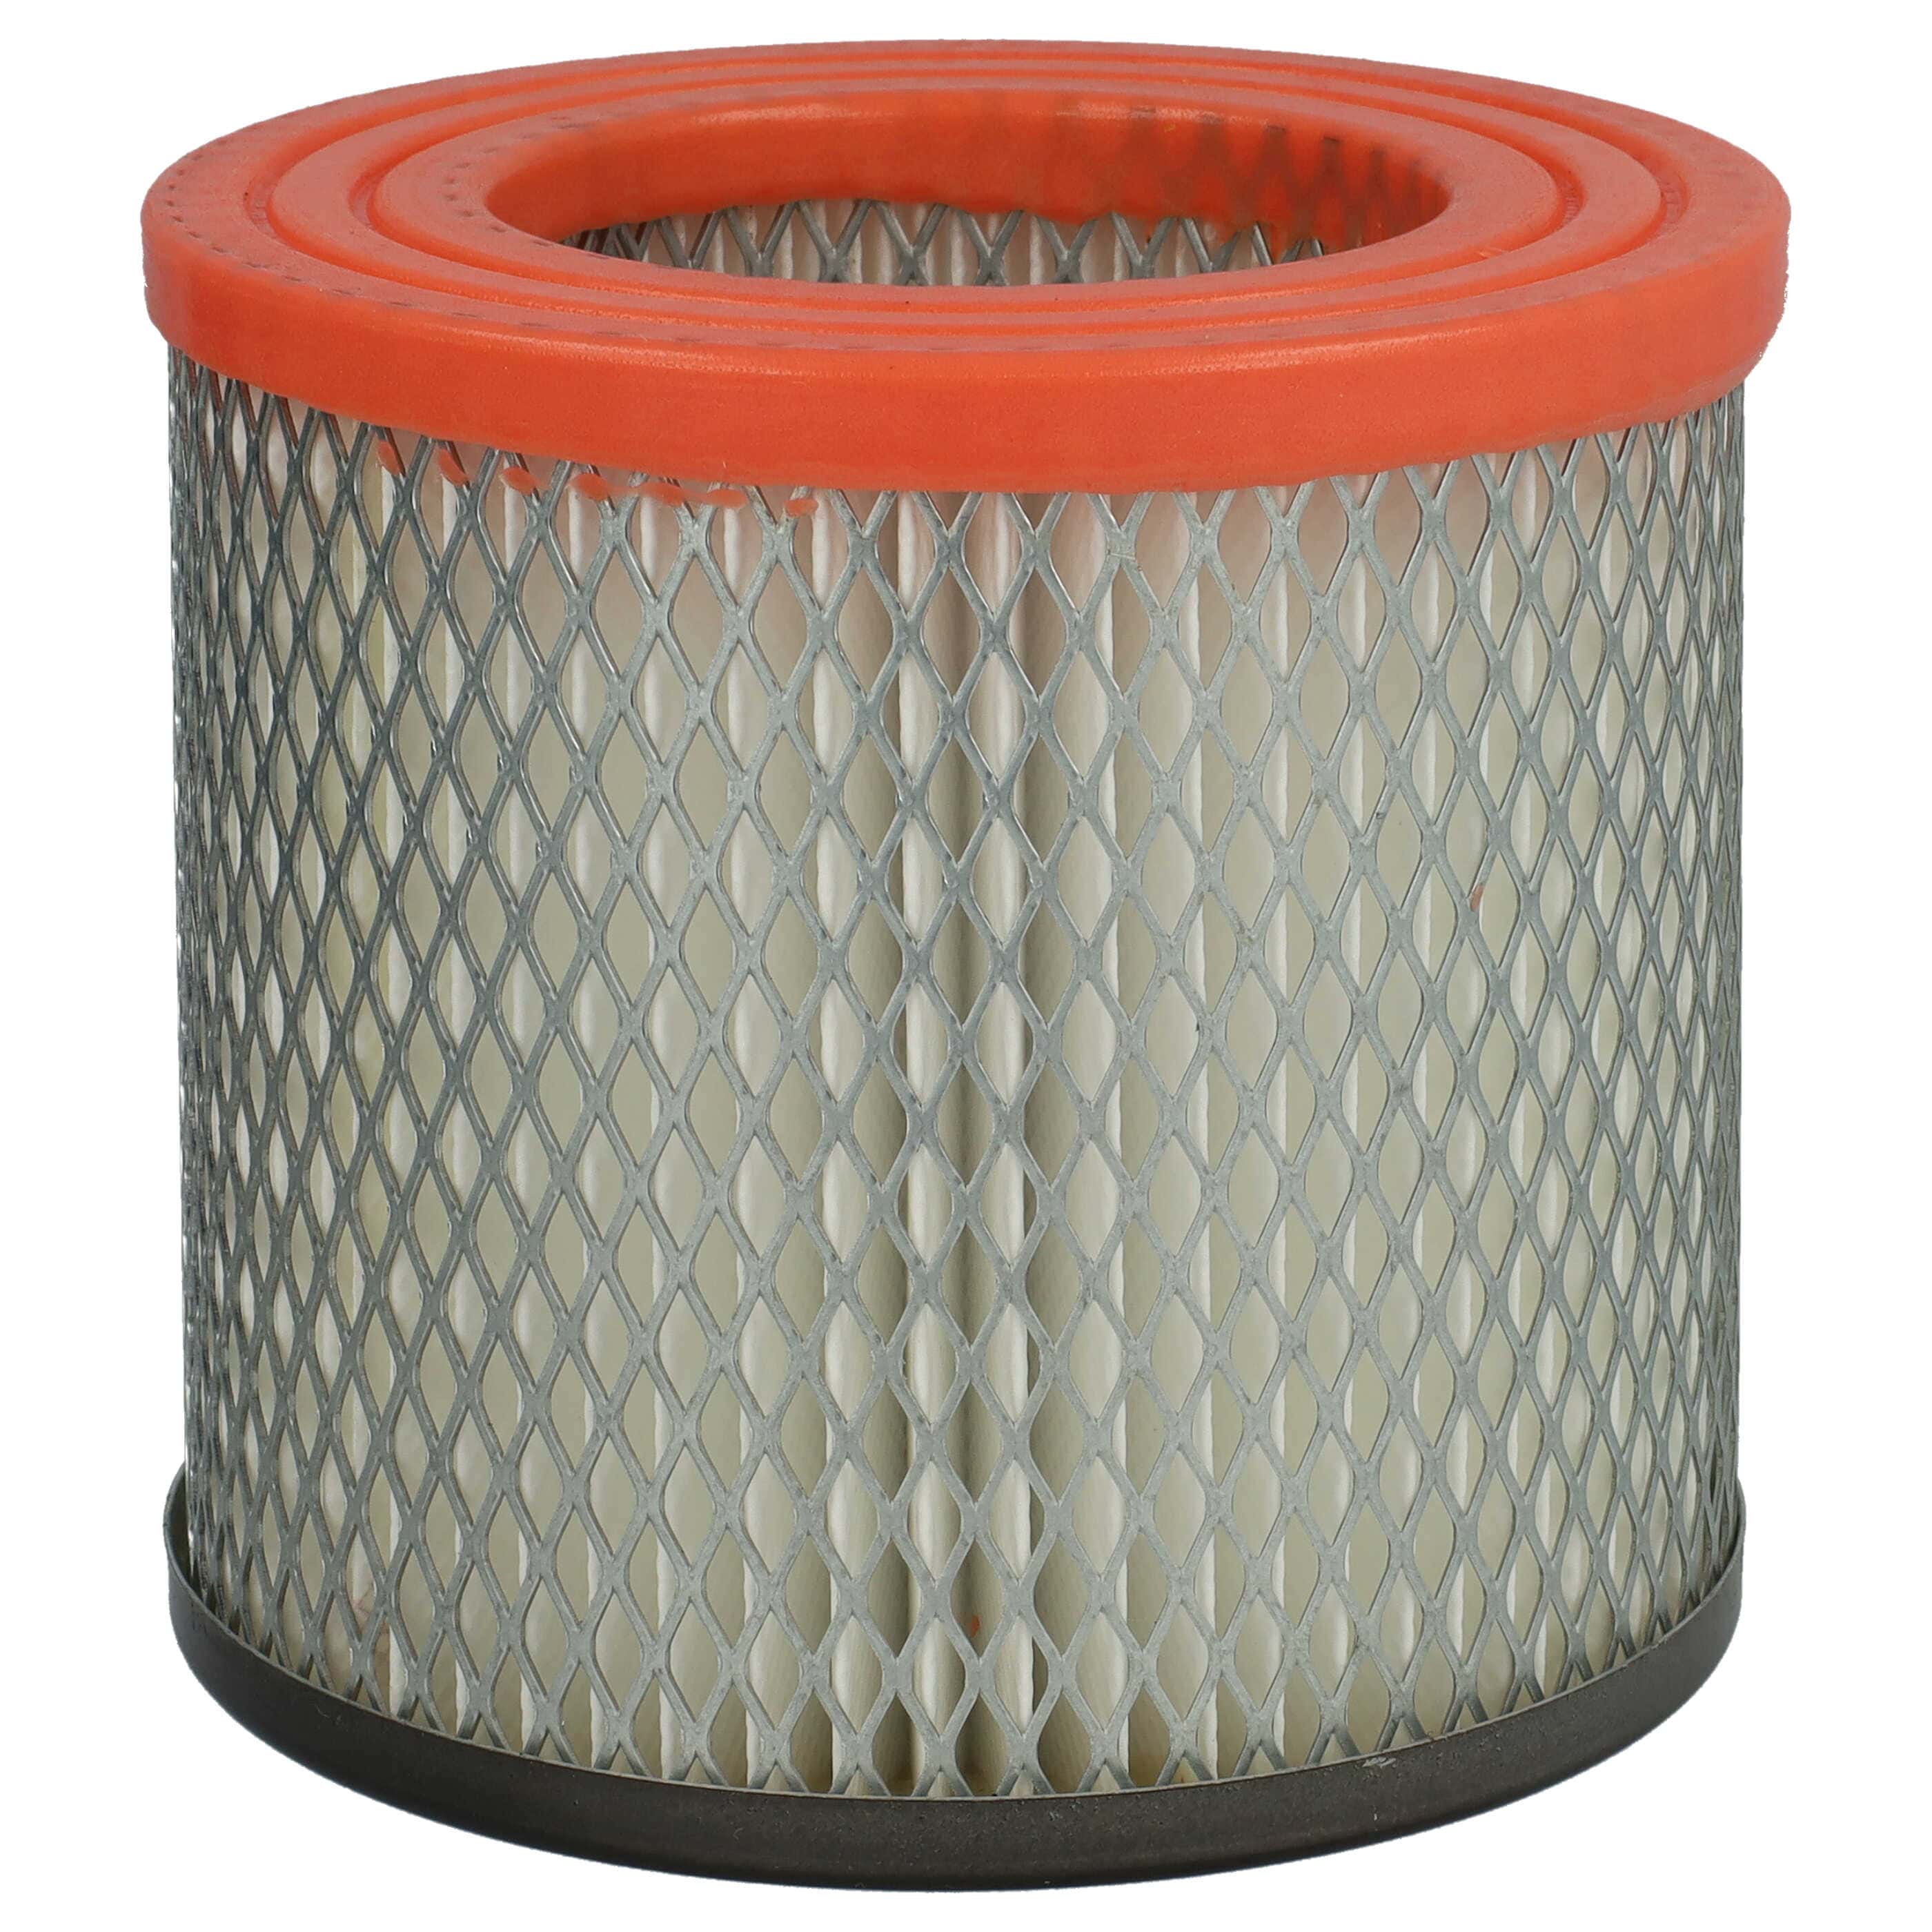 Filtro sostituisce Güde 16731 per aspiracenere - filtro cartucce, nero / arancione / bianco / grigio